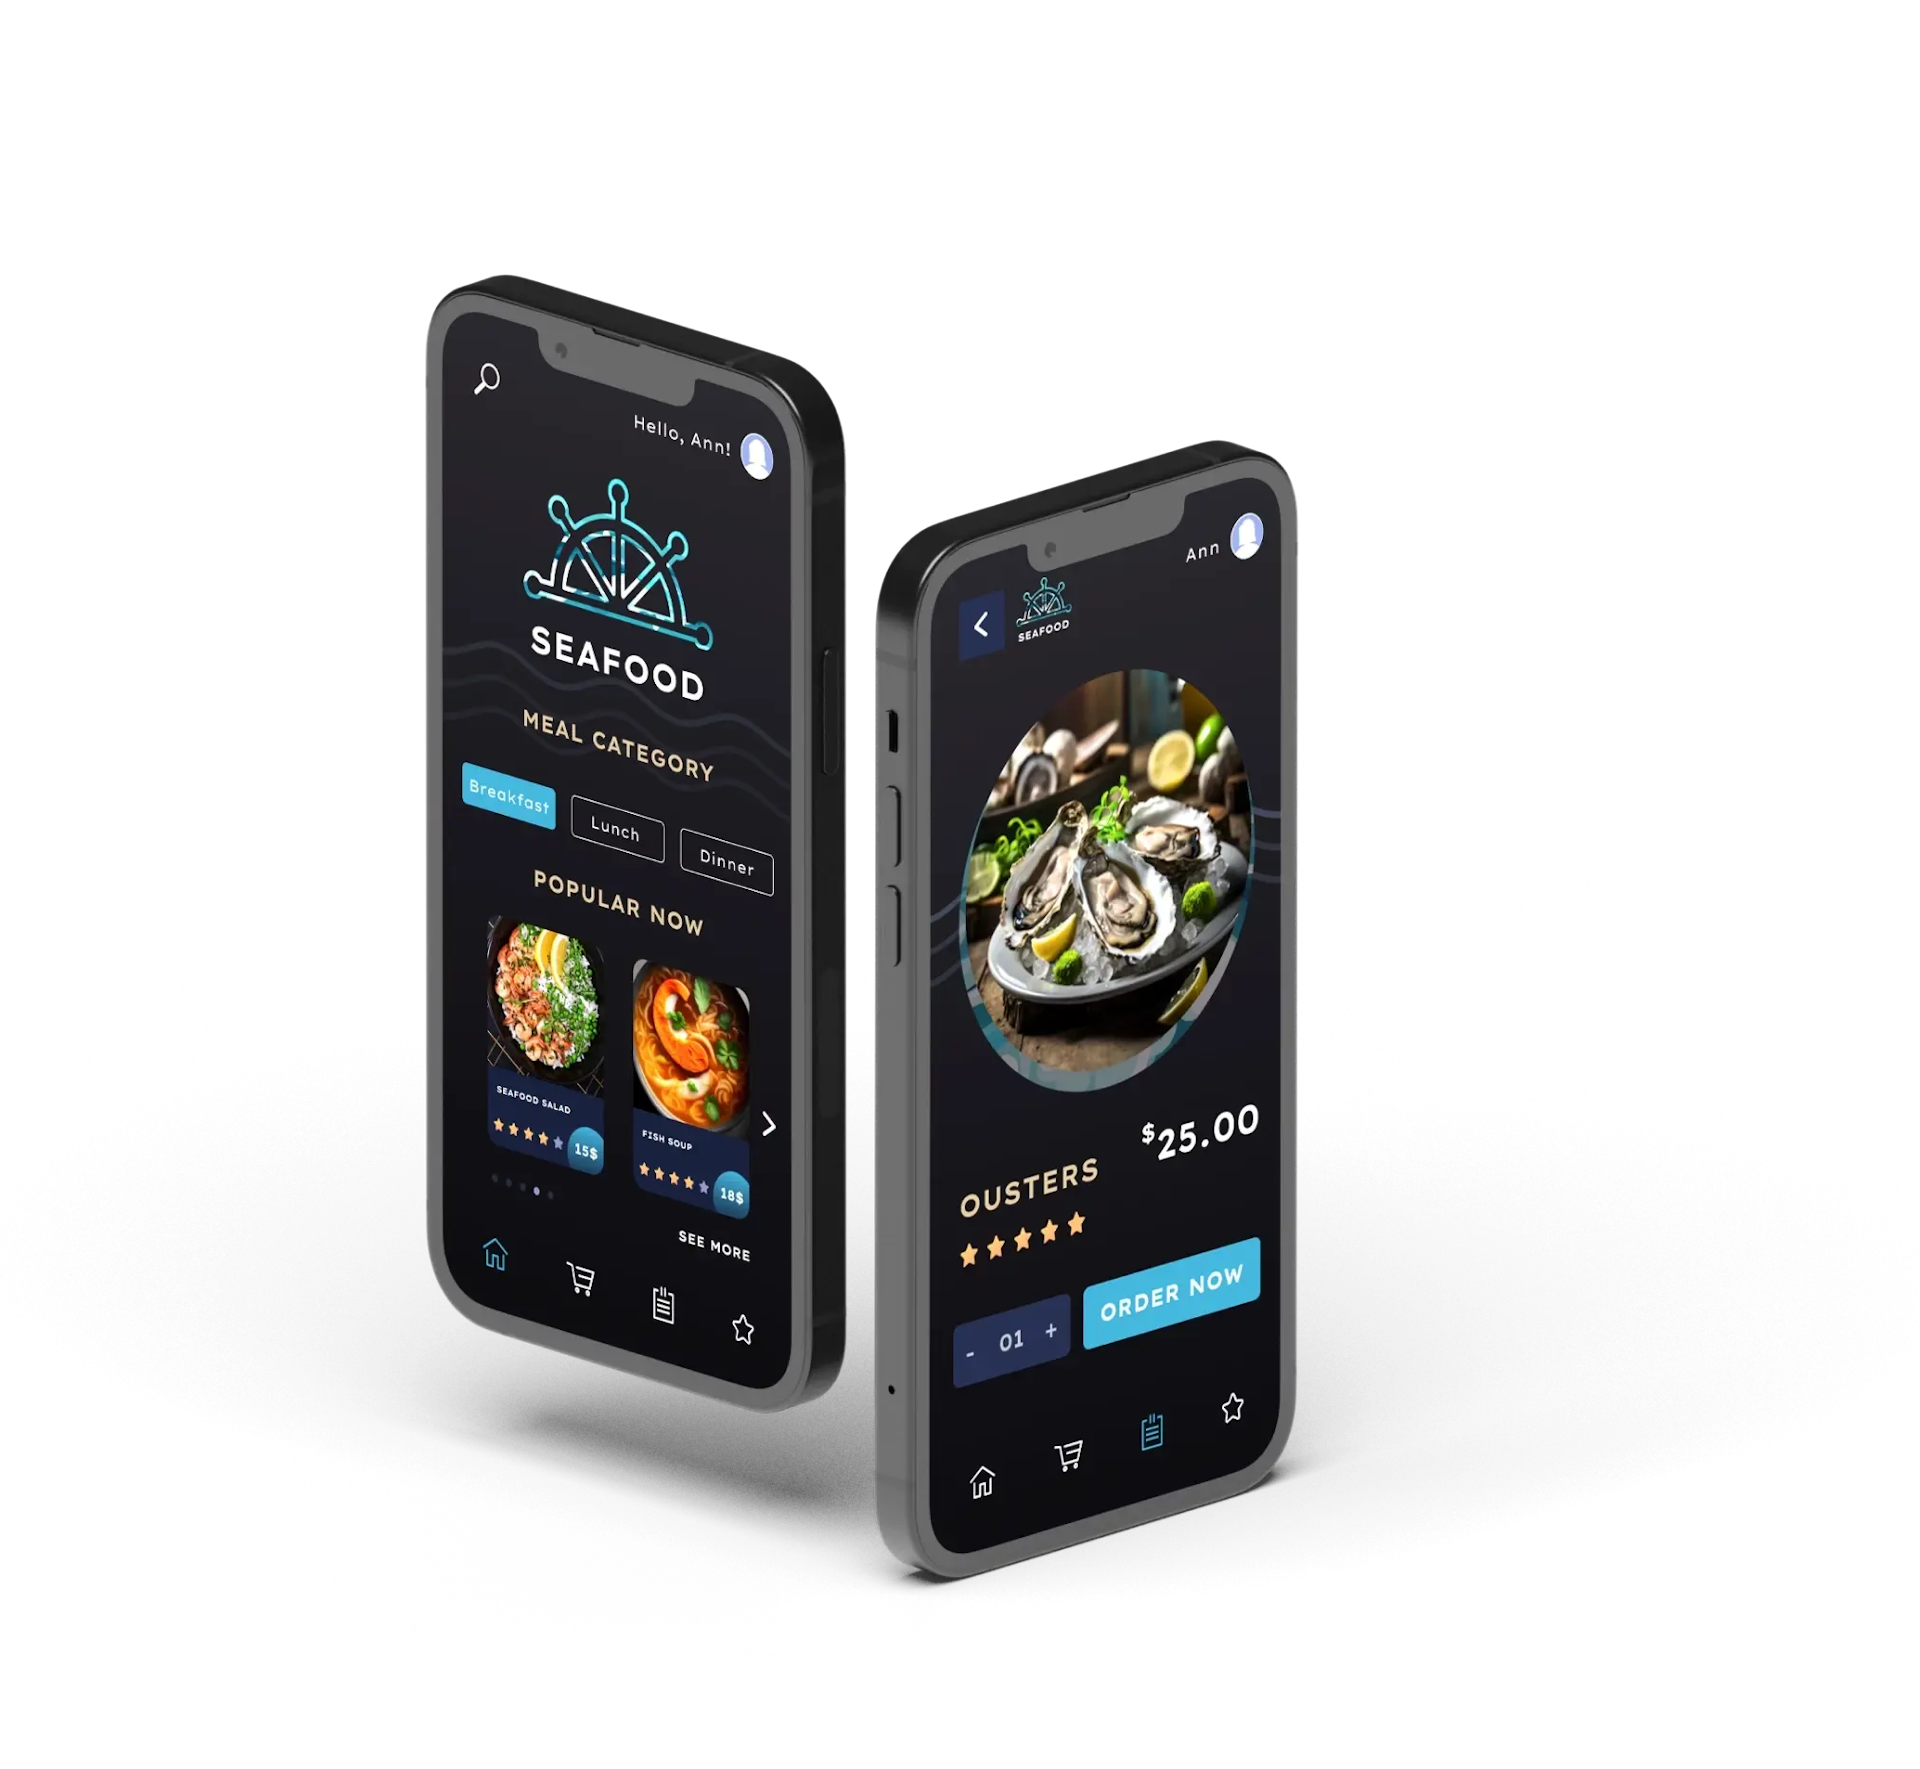 Mobile app for restaurant